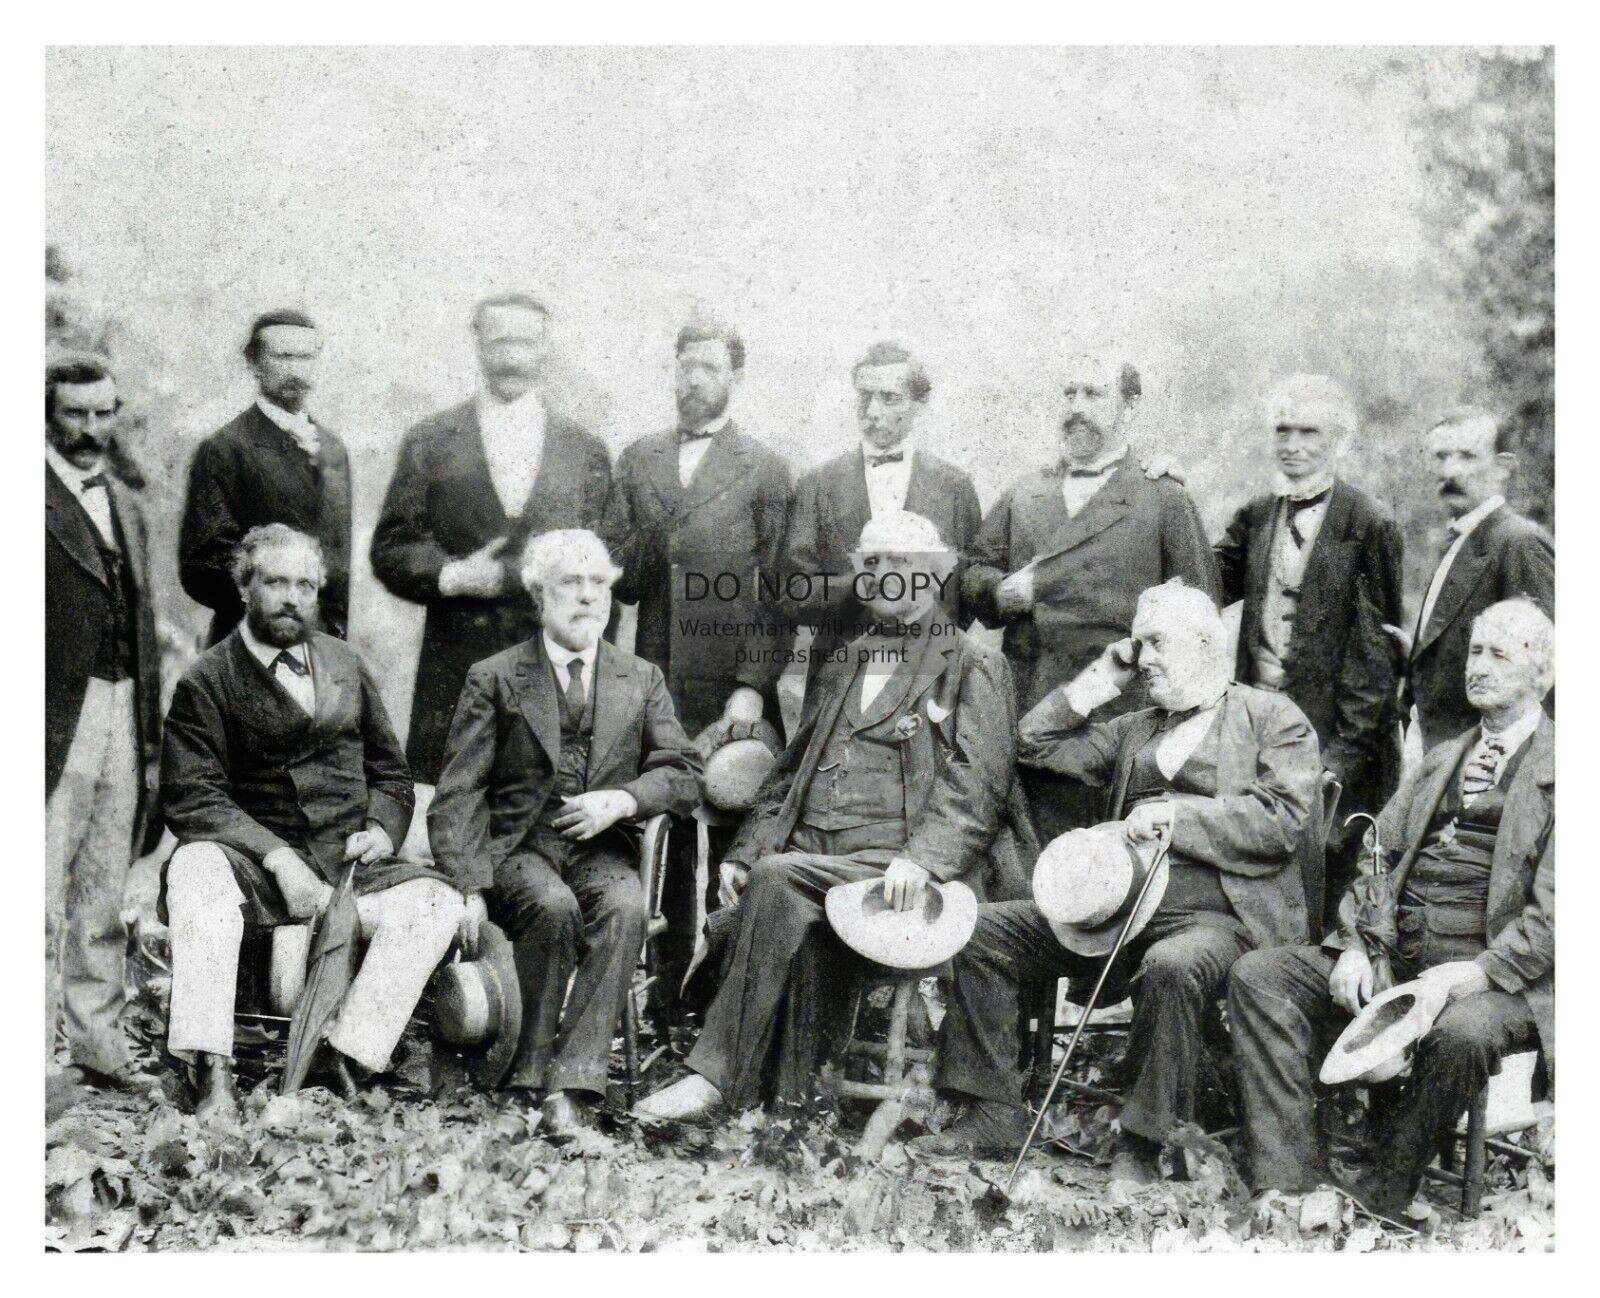 GENERAL ROBERT E. LEE AND HIS CIVIL WAR CONFEDERATE GENERALS 1869 8X10 PHOTO